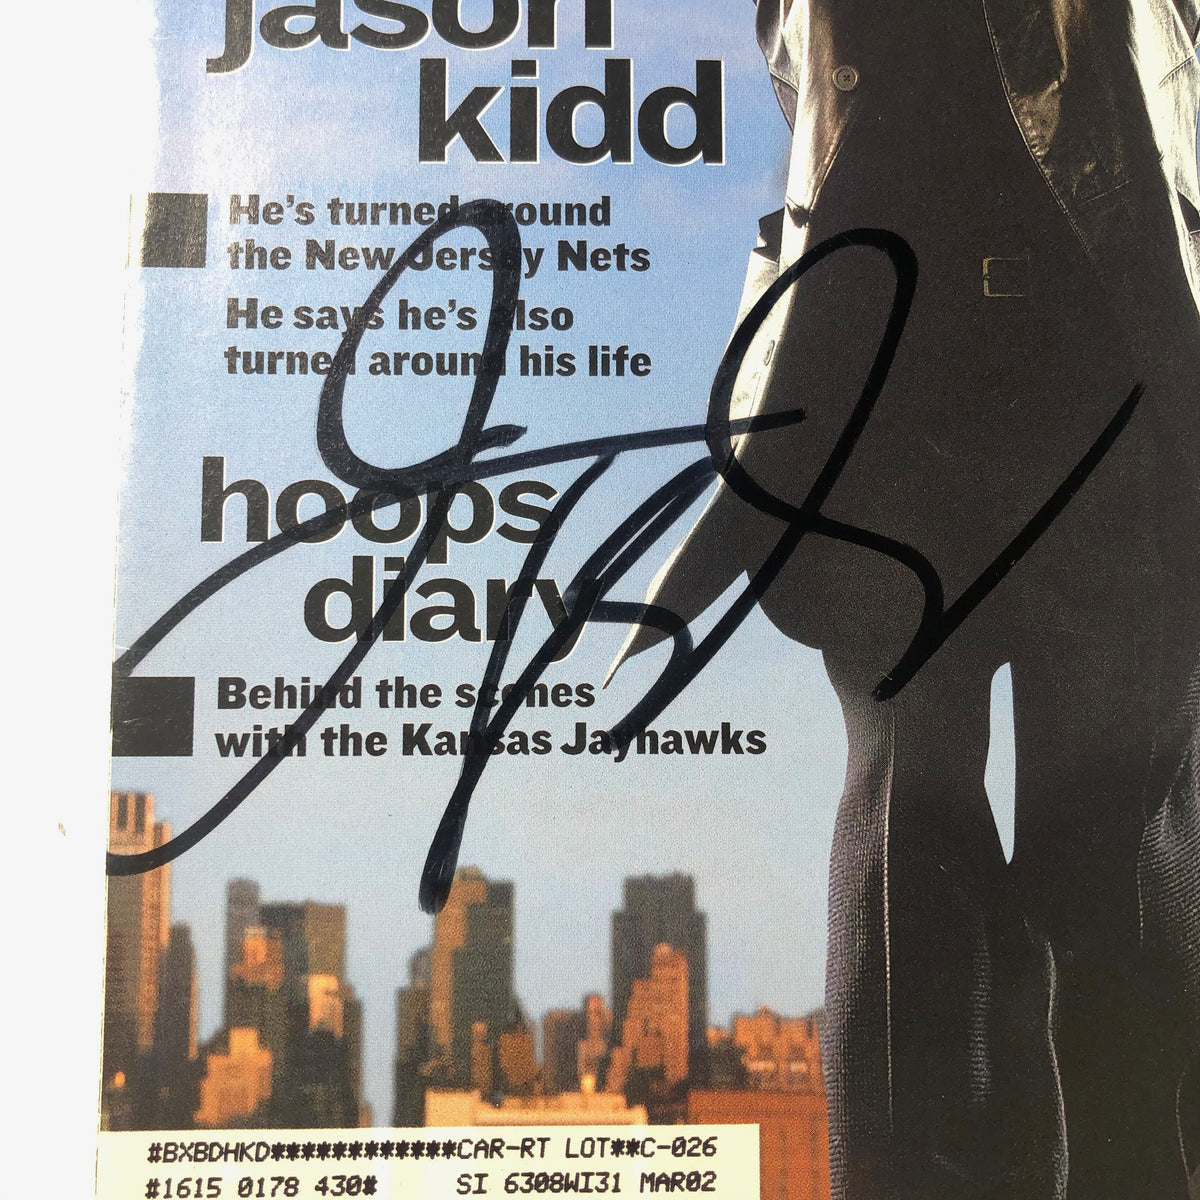 Jason Kidd Autographed Signed Framed New Jersey Nets Jersey 